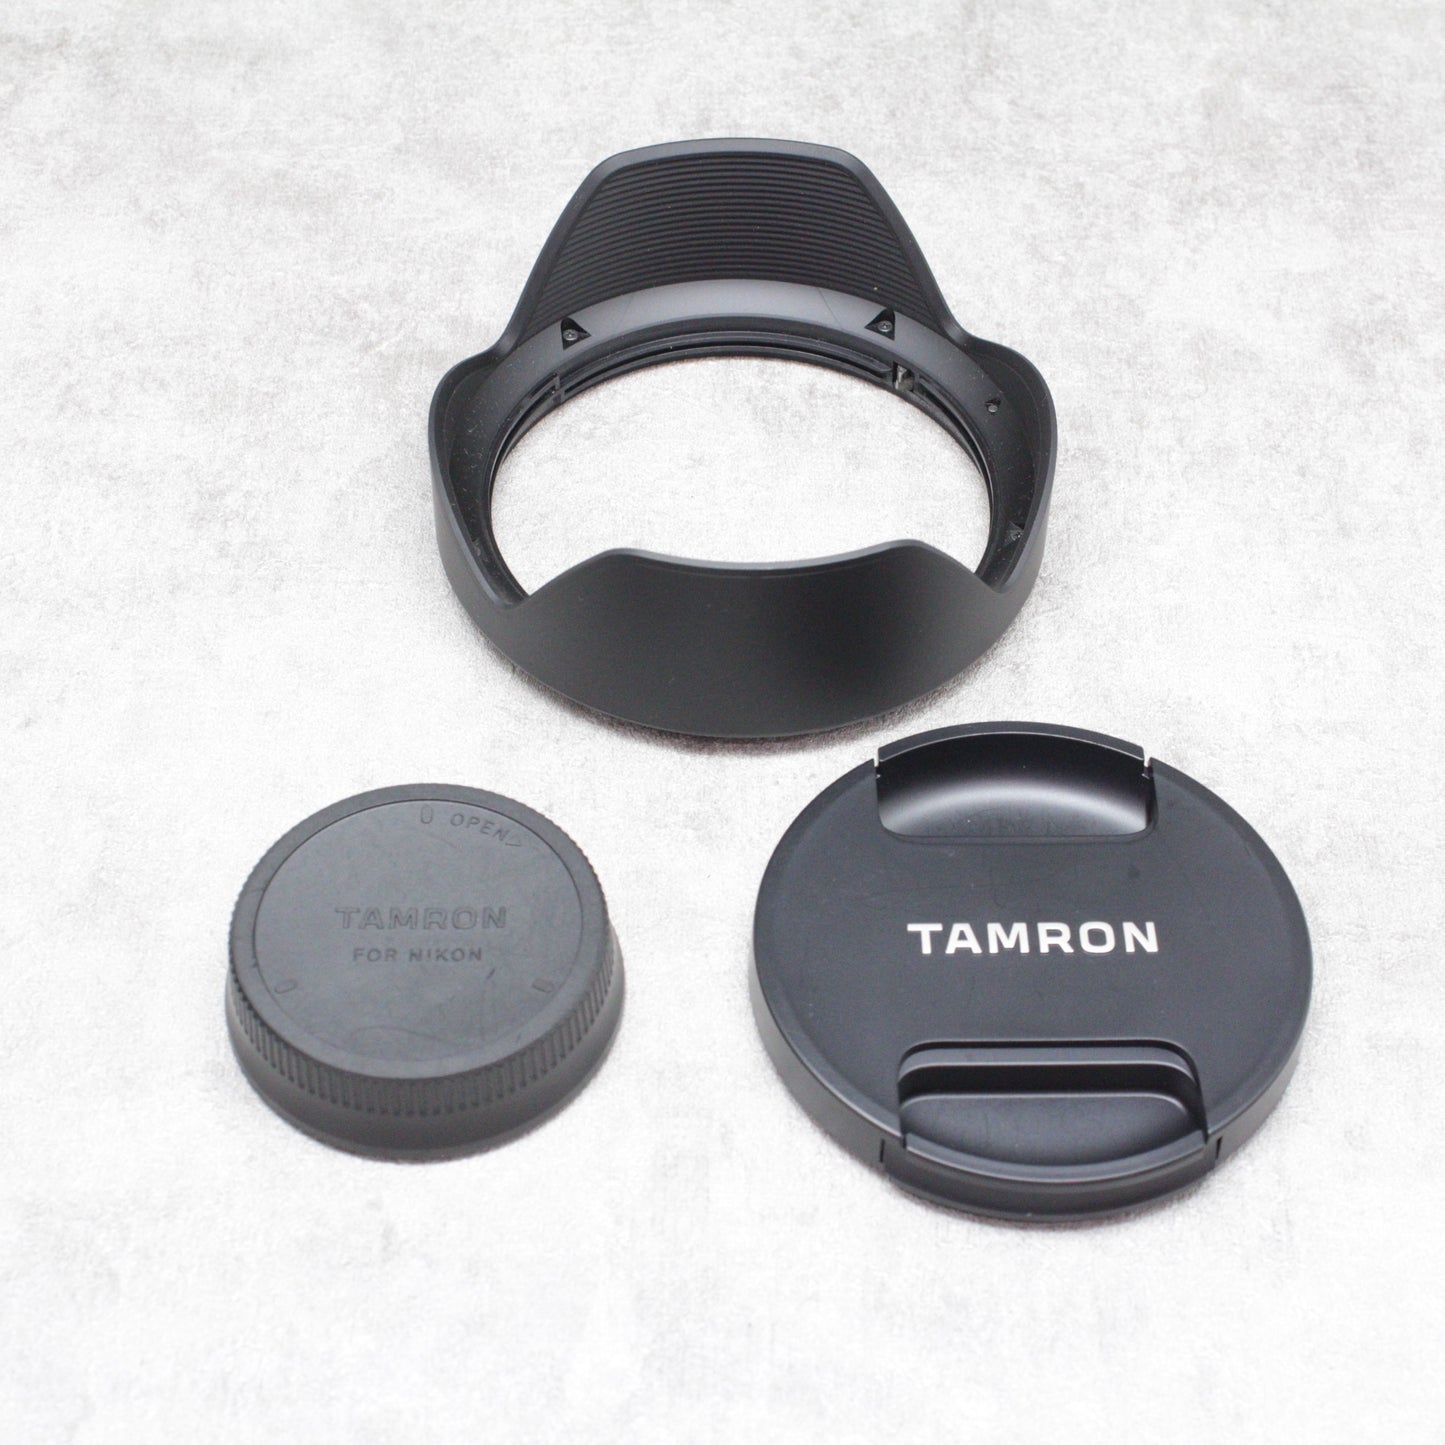 中古品 TAMRON SP 24-70mm F/2.8 Di VC USD G2 (Model A032) Nikon用 【YouTube生配信でご紹介】